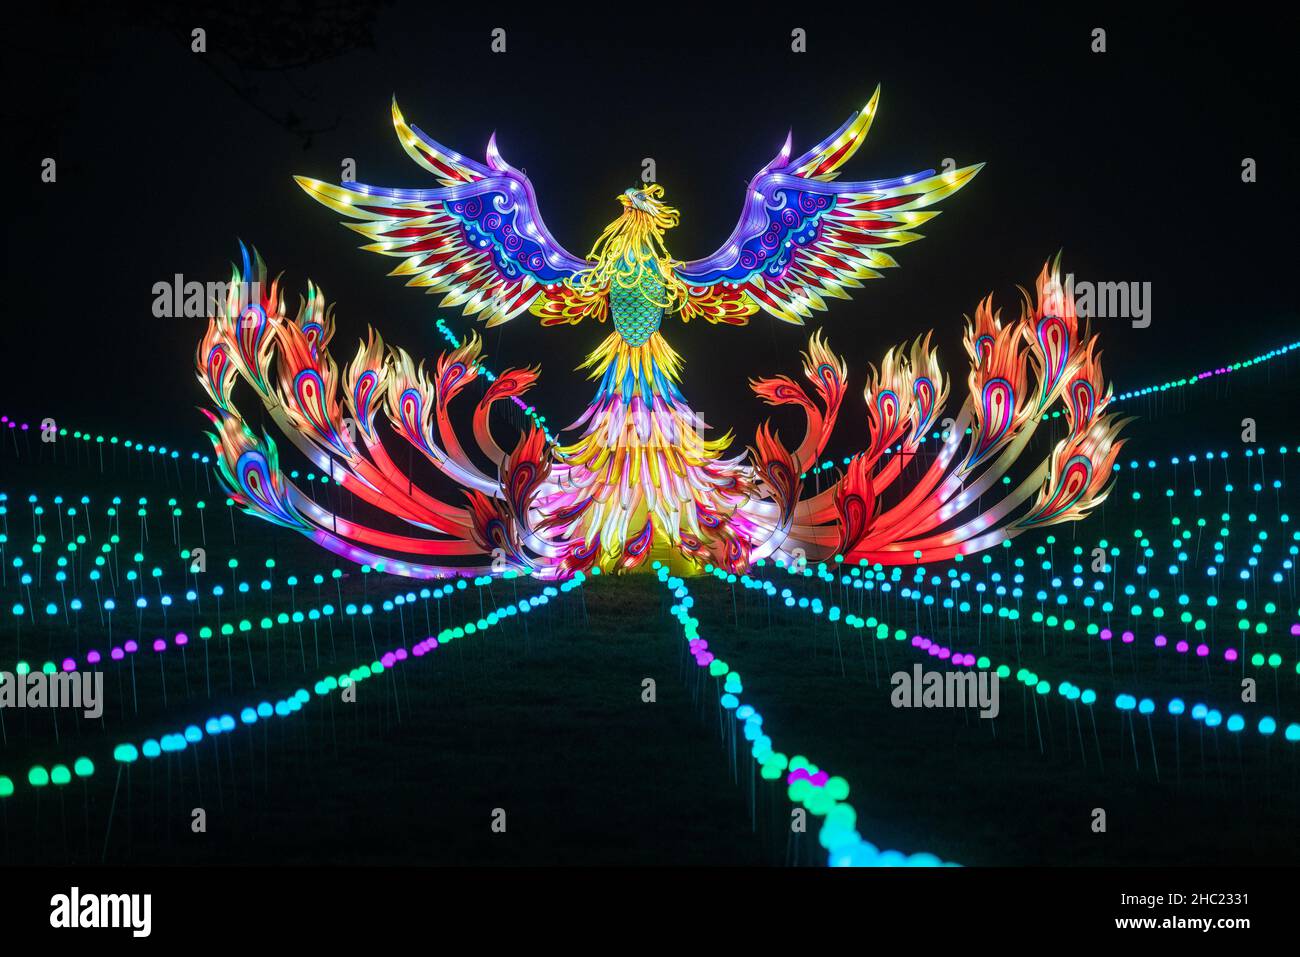 Installation d'art ornithologique colorée qui illumine plusieurs couleurs lors de l'événement Lightopia au Crystal Palace Park, Londres Banque D'Images